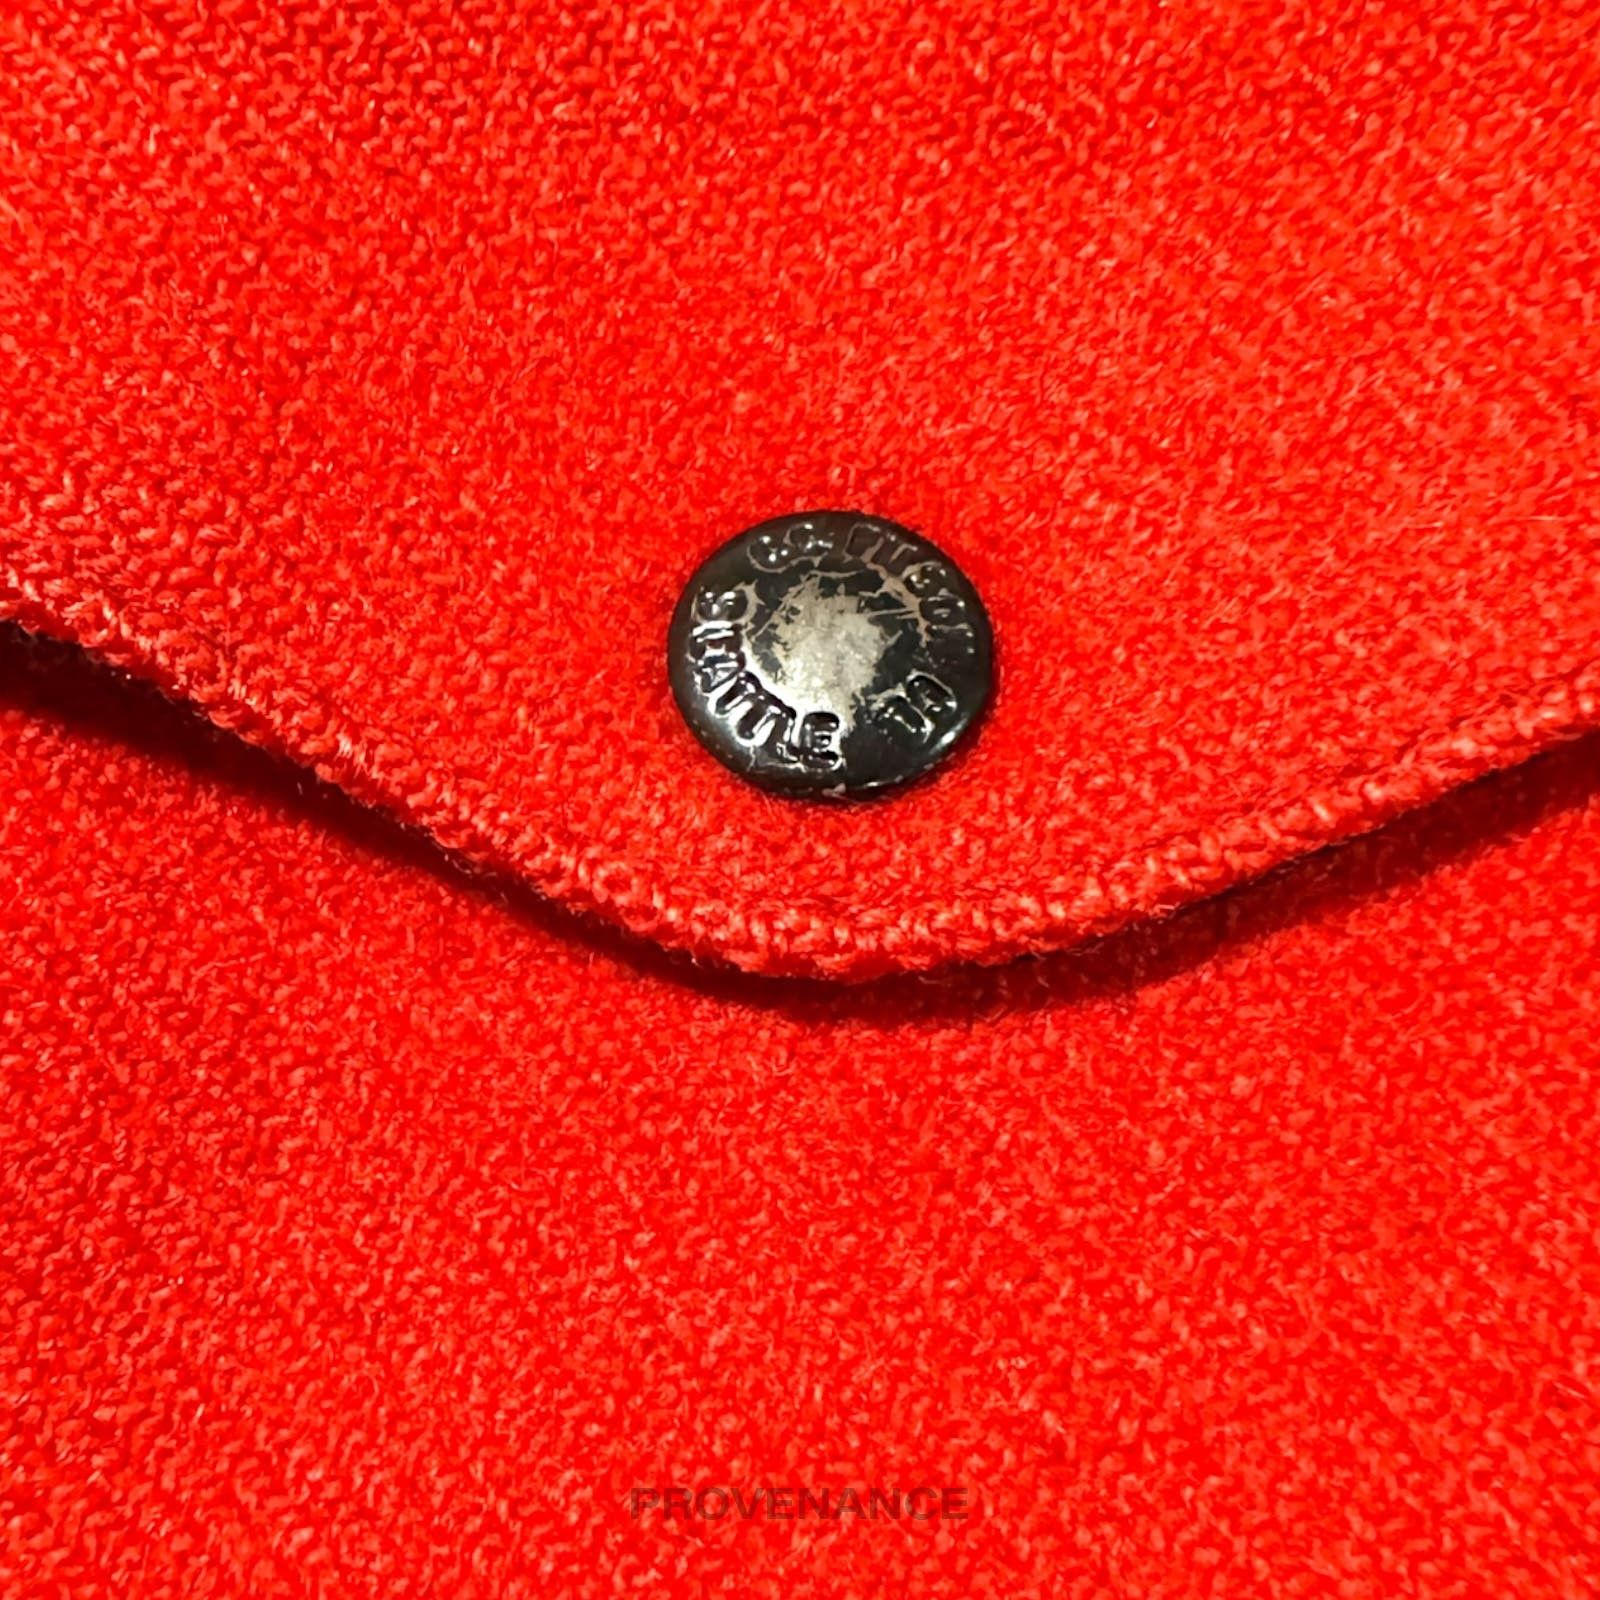 Filson 🔴 Filson Mackinaw Wool Cruiser Jacket - Scarlet Red 42 M Size US M / EU 48-50 / 2 - 10 Thumbnail